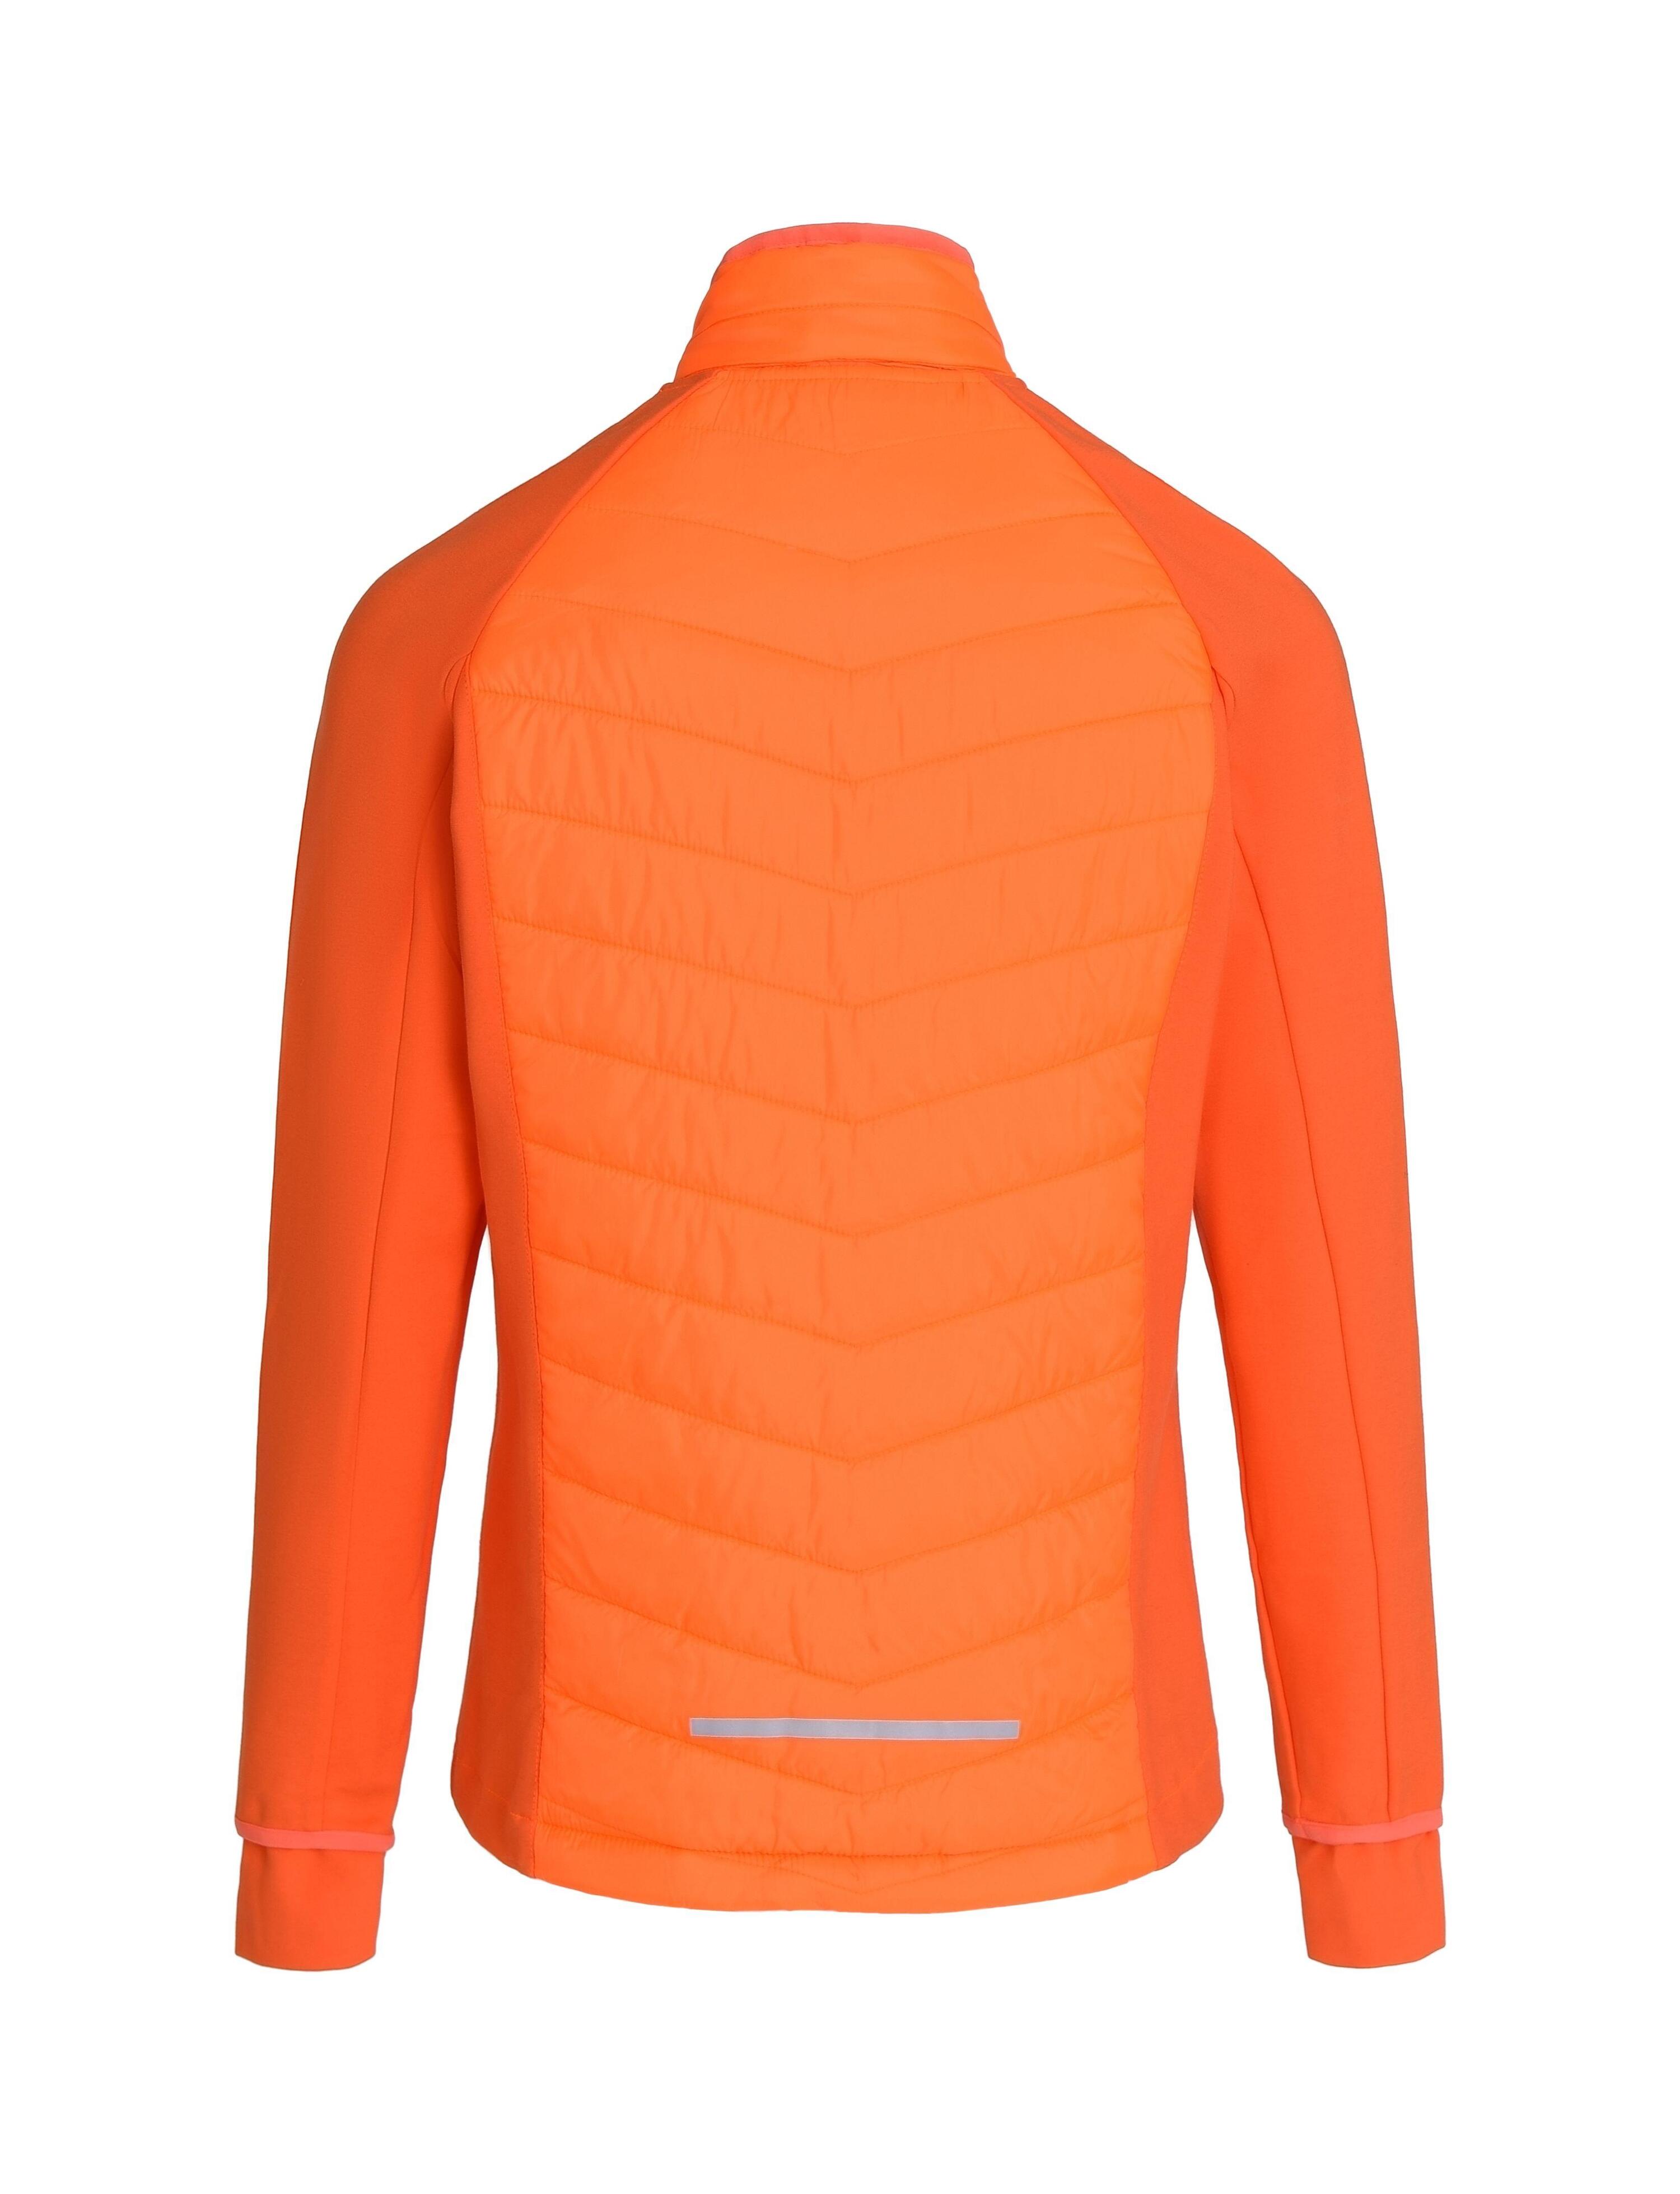 Girls' Excel All-Season Lightweight Jacket - Neon Orange 3/4